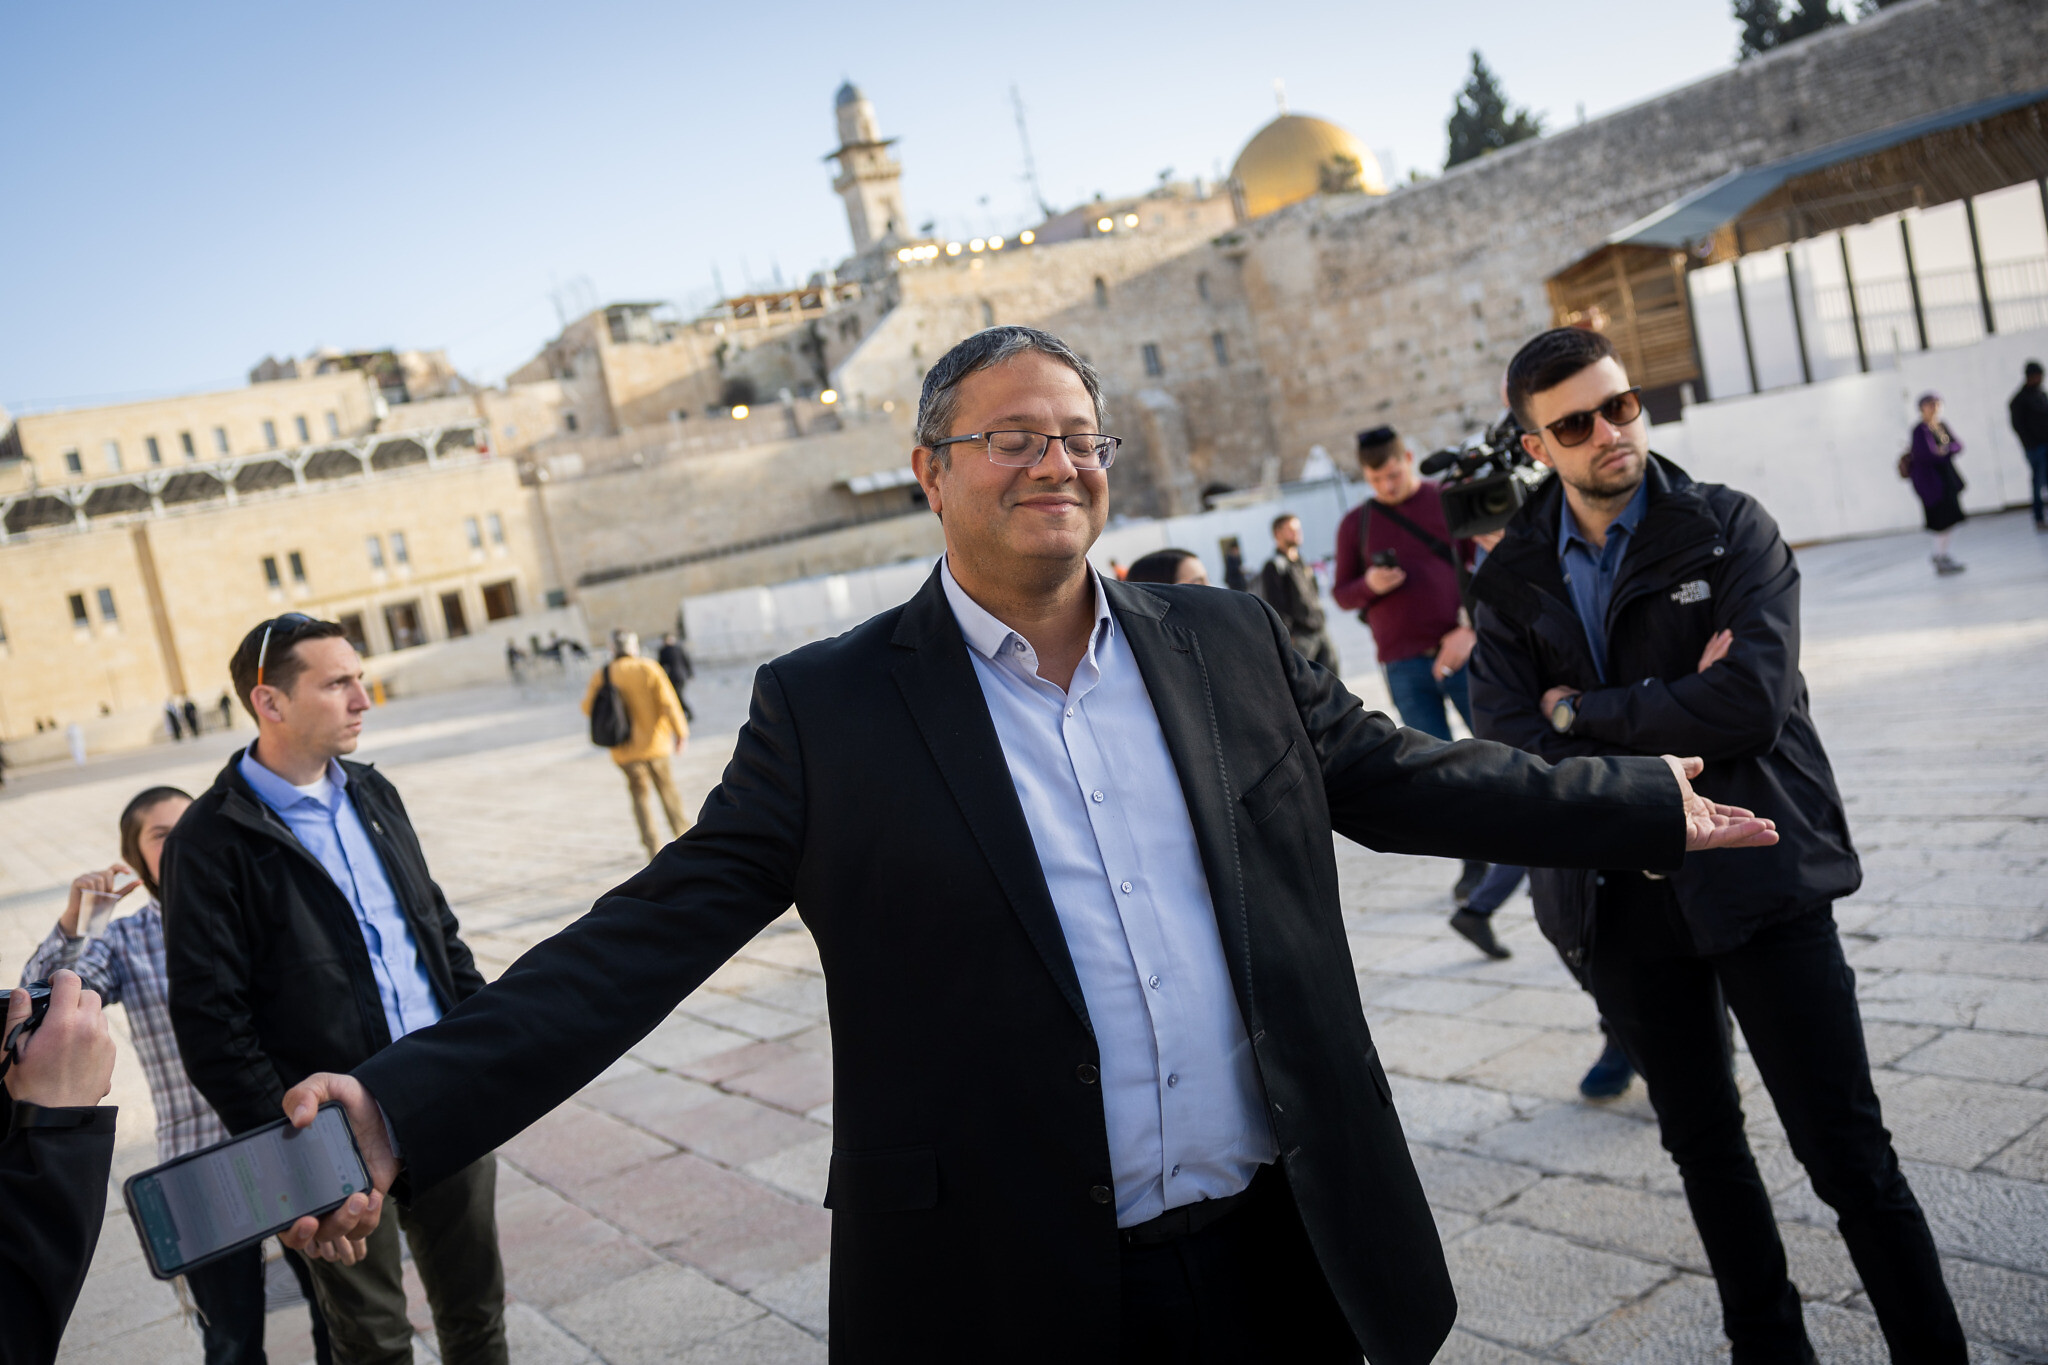 Turki dan Negara Arab Kecam Kunjungan Menteri Israel ke Al Aqsa